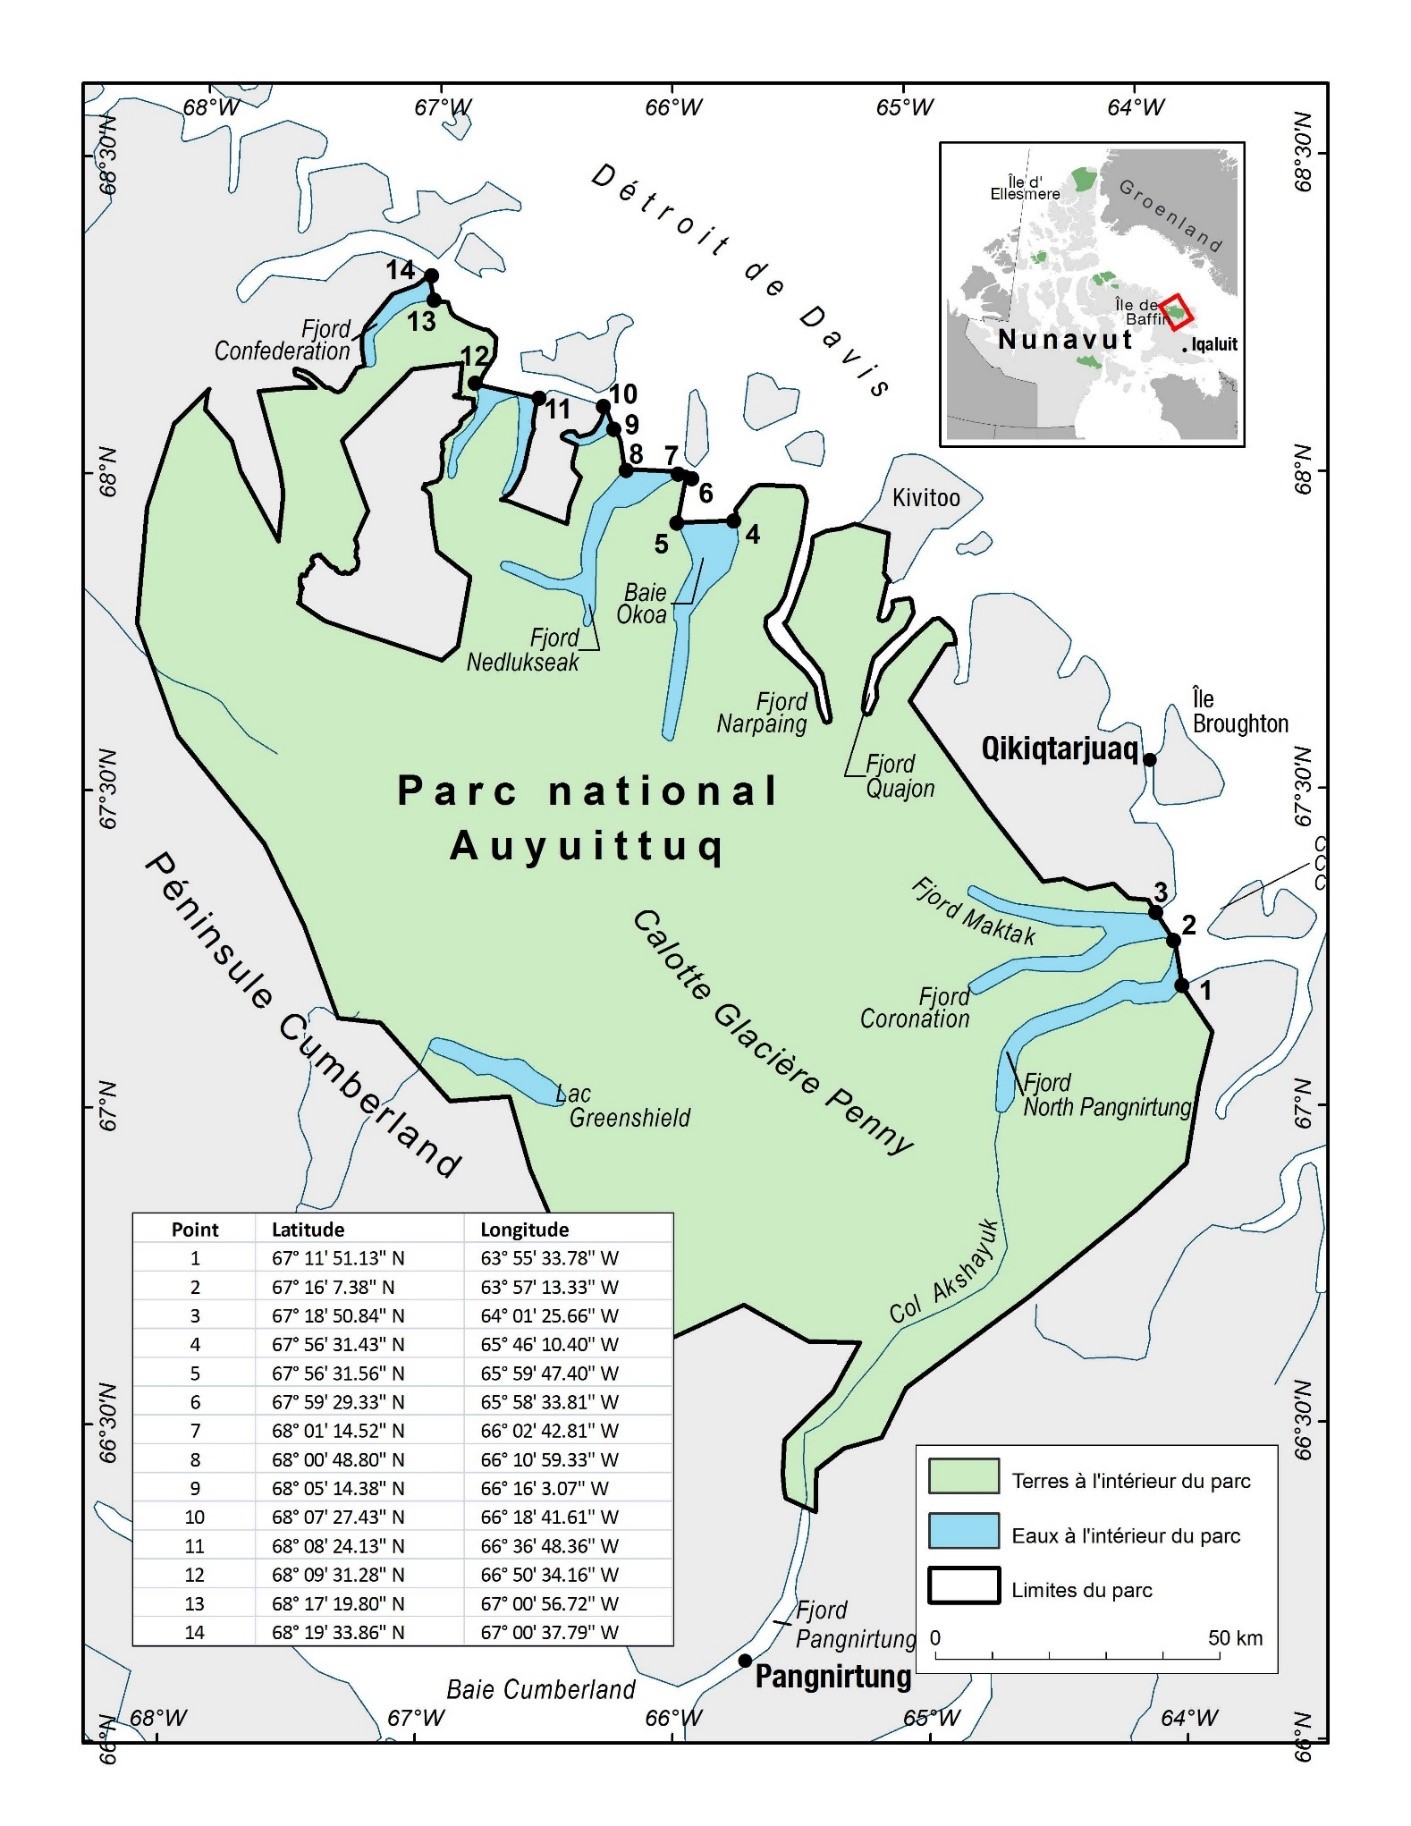 Carte du parc national du Canada Auyuittuq avec des points
                 de coordonnées pour indiquer ses limites lorsqu'on y accède 
                 par l'eau.